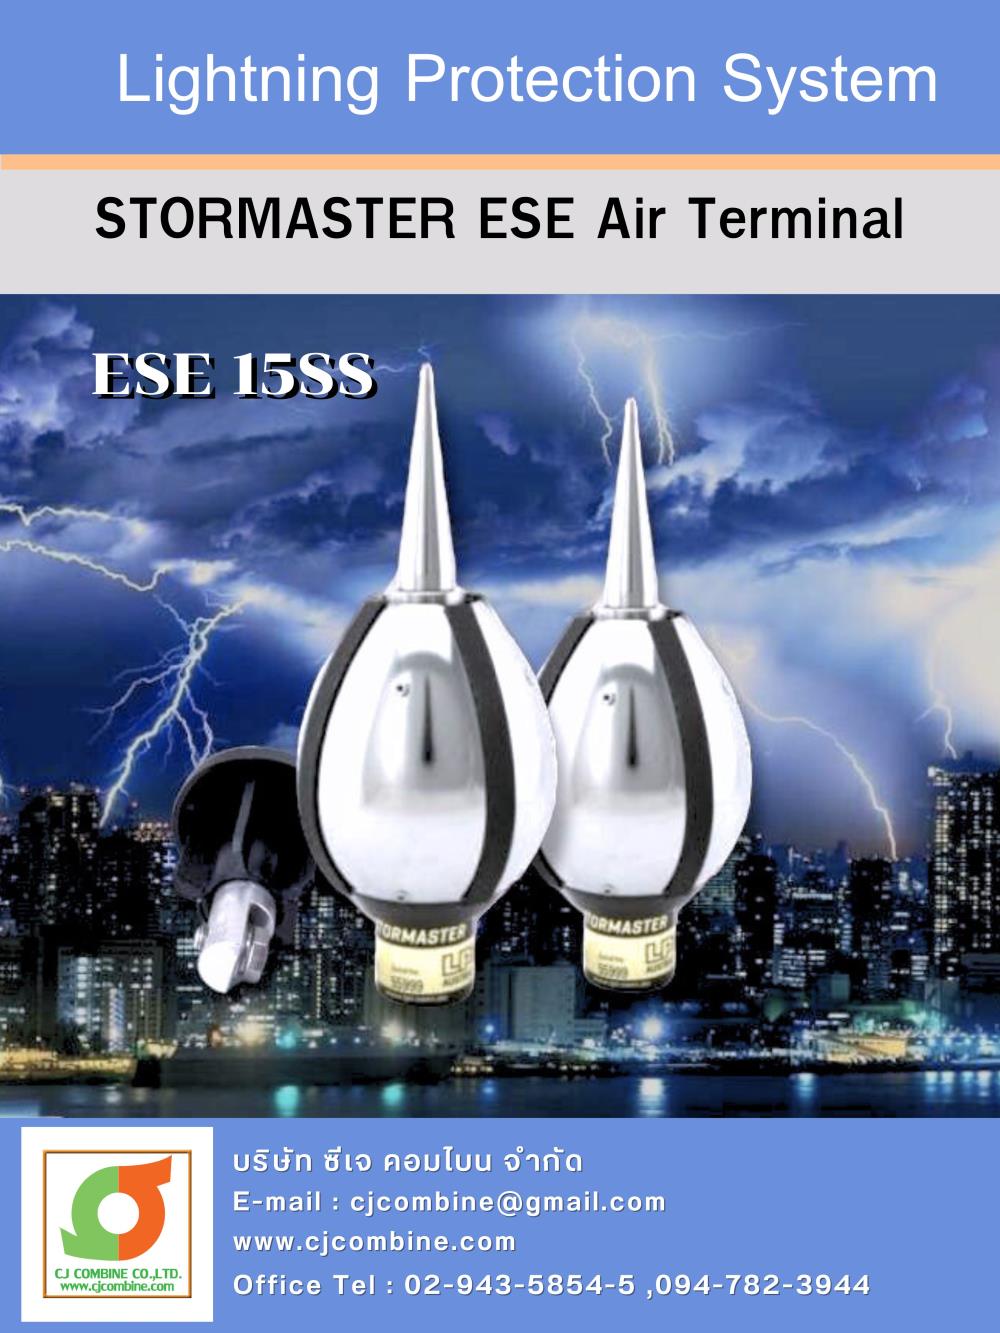 หัวล่อฟ้า Air Terminal Stormaster ESE (Lightning Protection System),หัวล่อฟ้า,สายล่อฟ้า,ล่อฟ้า,Lightning protection,LPI,Engineering and Consulting/Engineering/Electronic